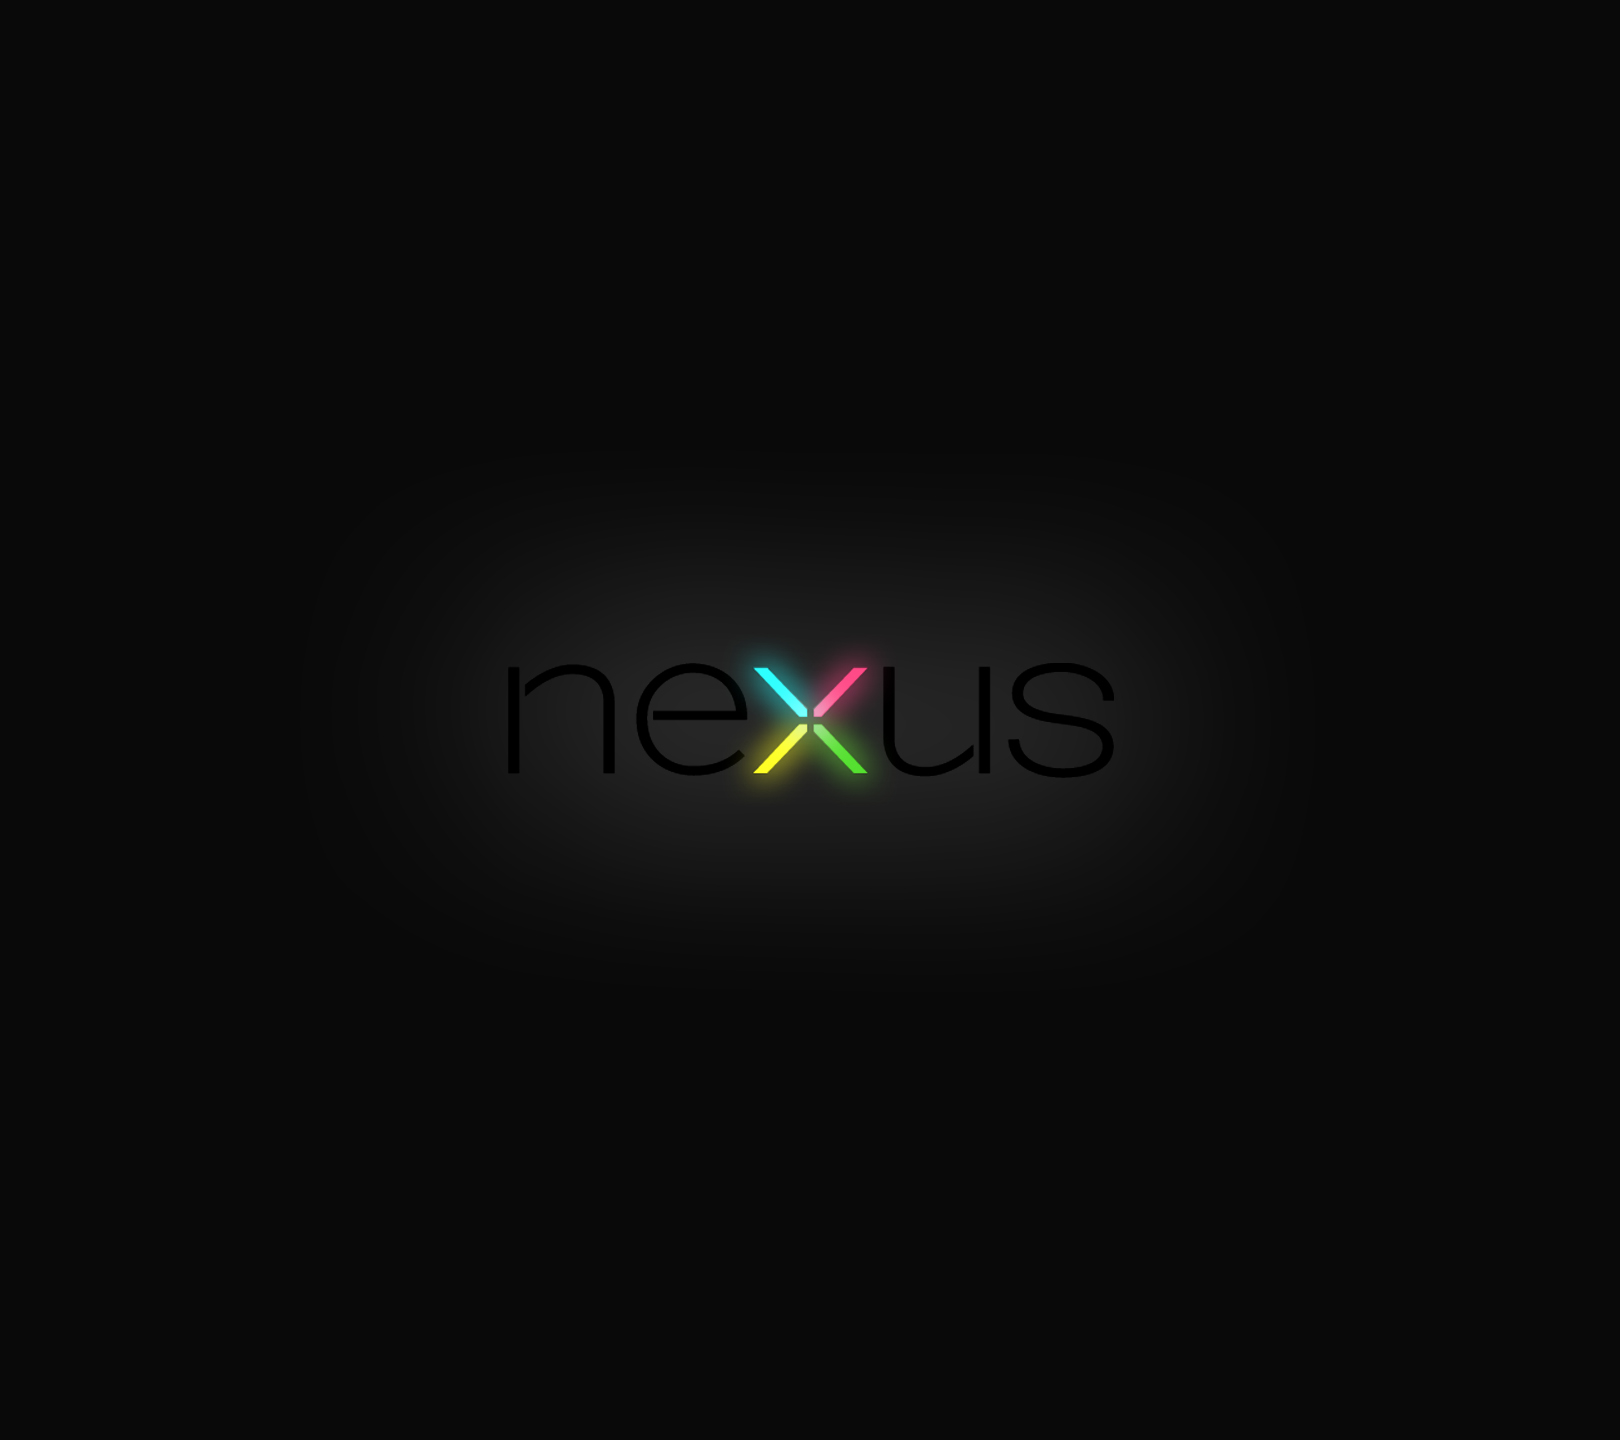 Nexus Puter Wallpaper On